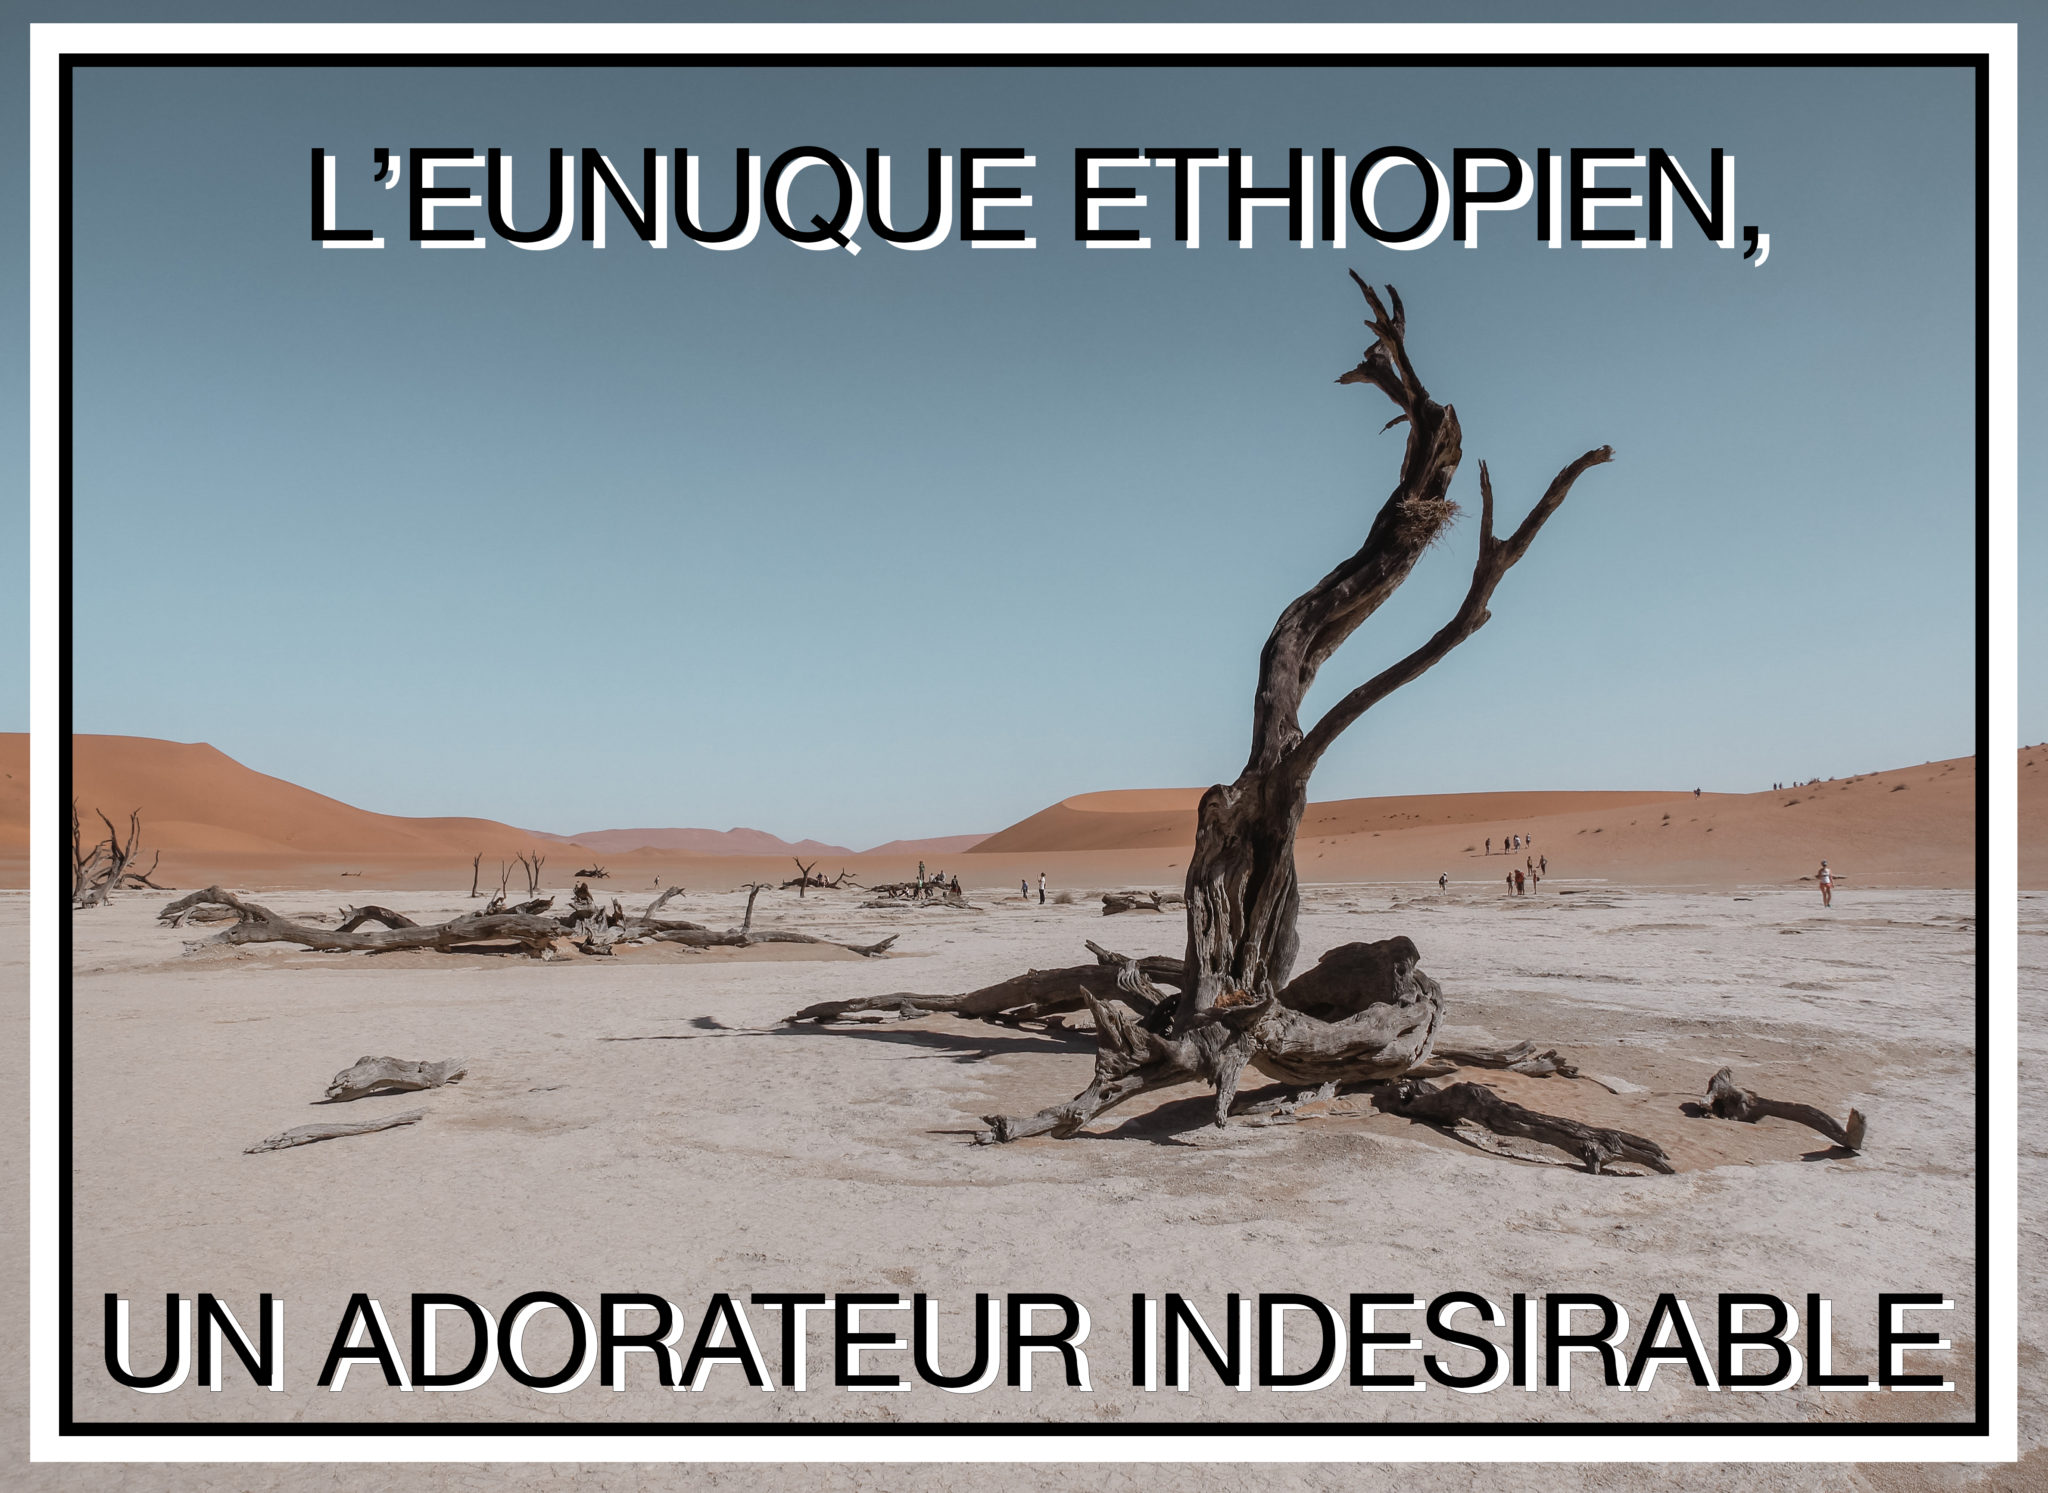 ETHIOPIAN